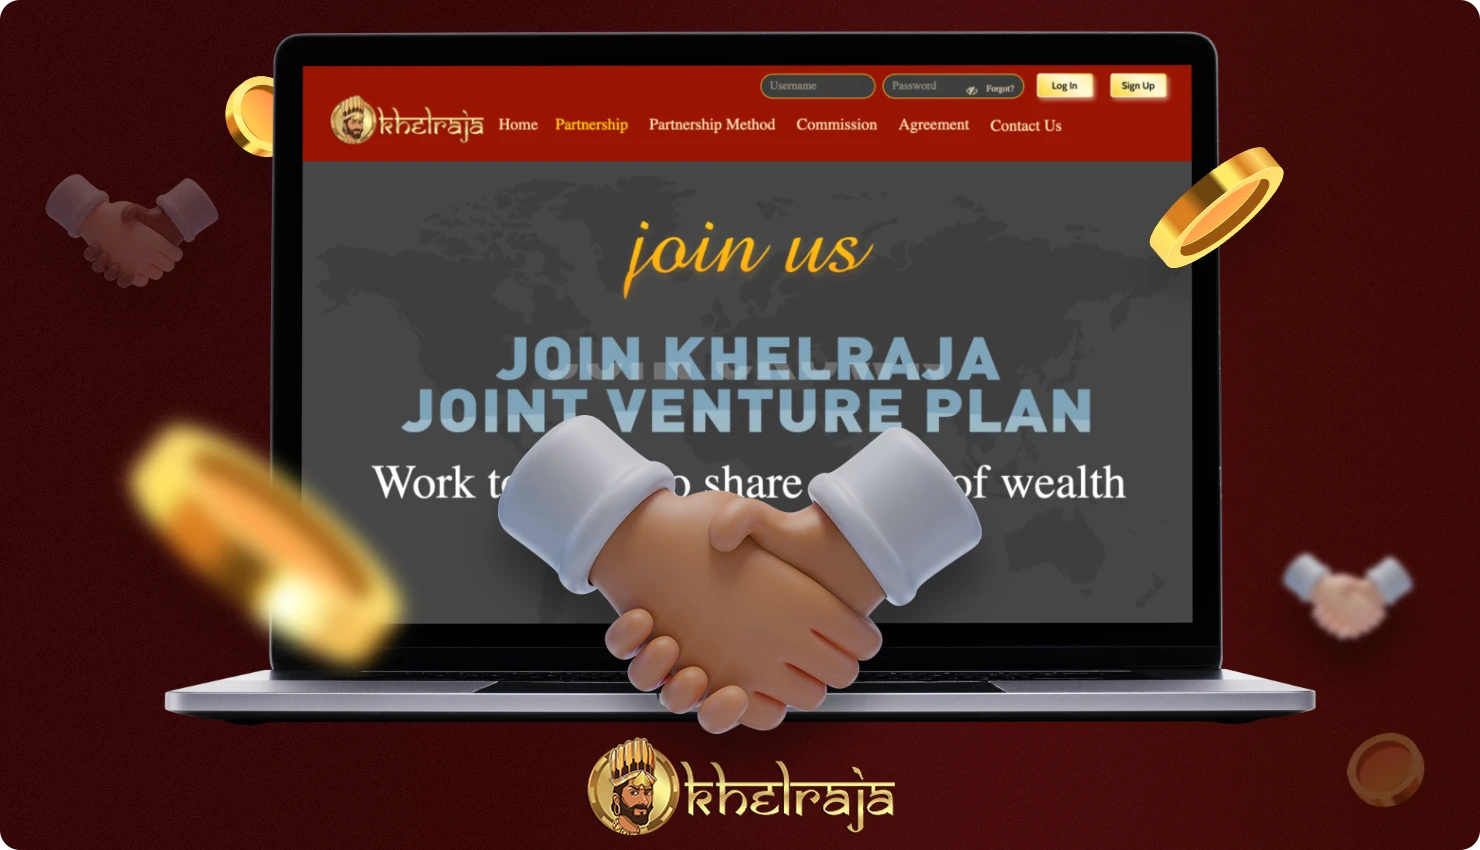 Khelraja सहबद्ध कार्यक्रम आपको केवल उपयोगकर्ताओं को मंच पर आमंत्रित करके पैसा कमाने की अनुमति देता है